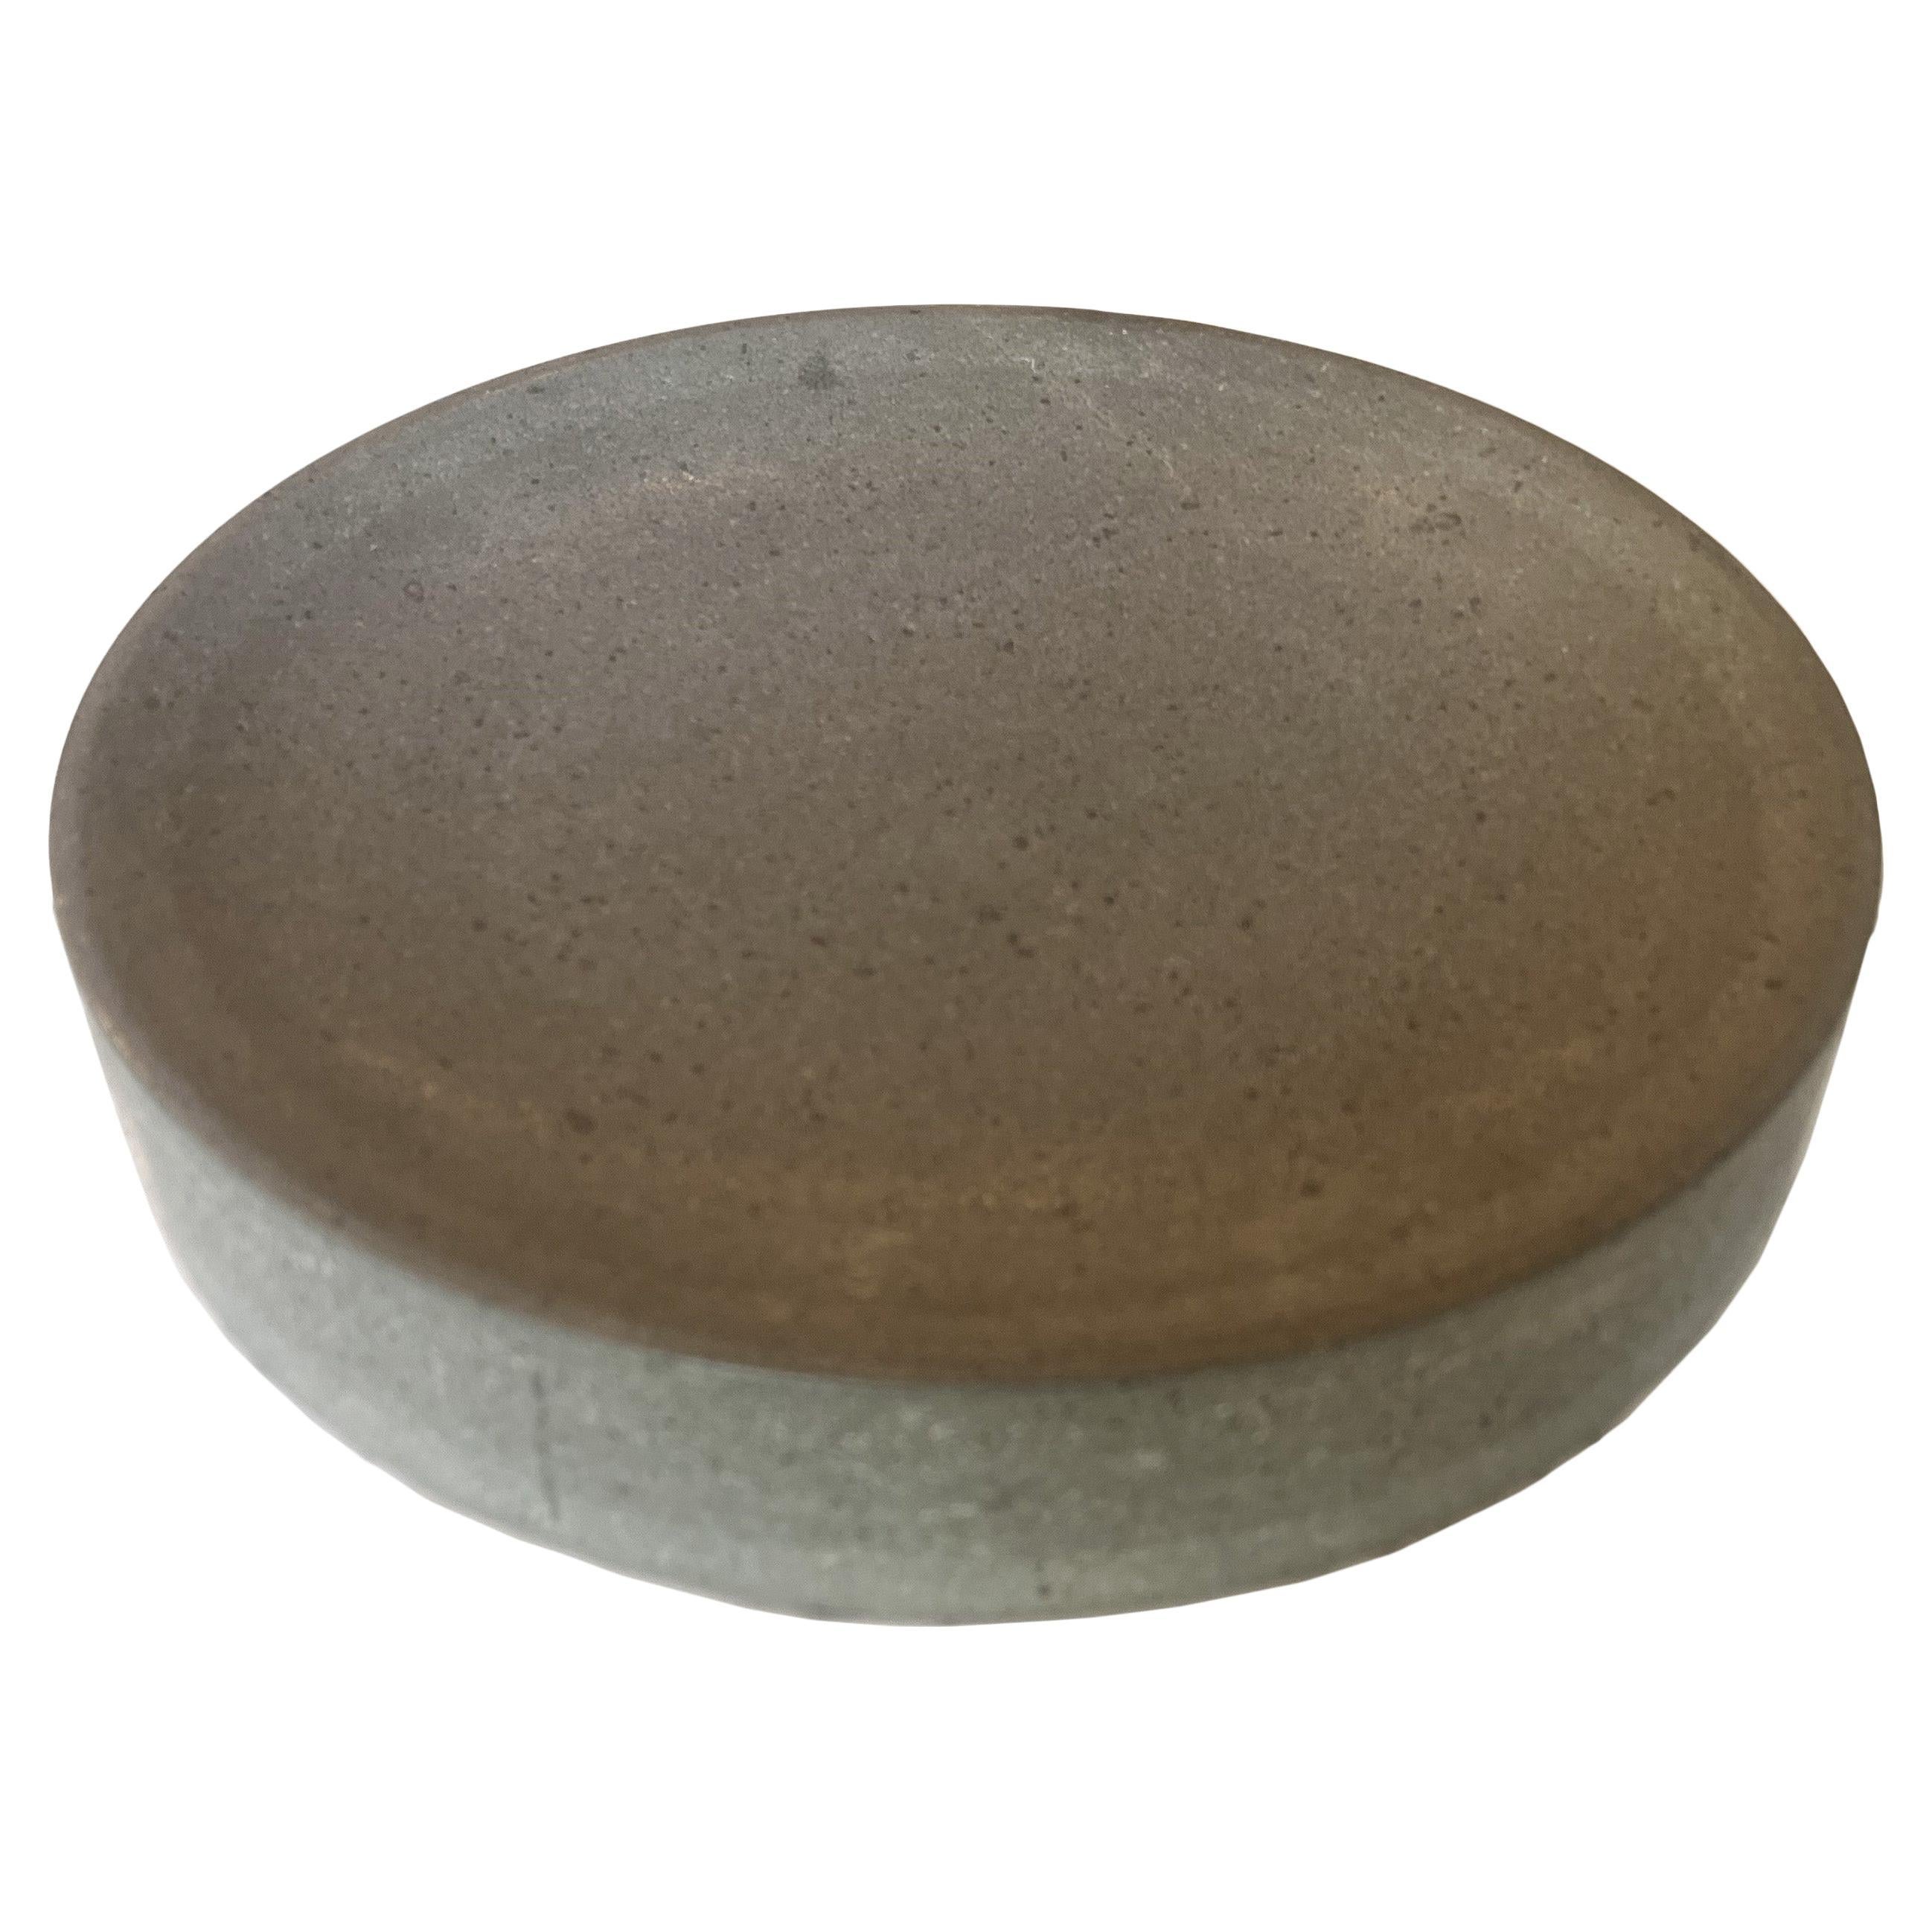 Artesian Concrete Bowl For Sale